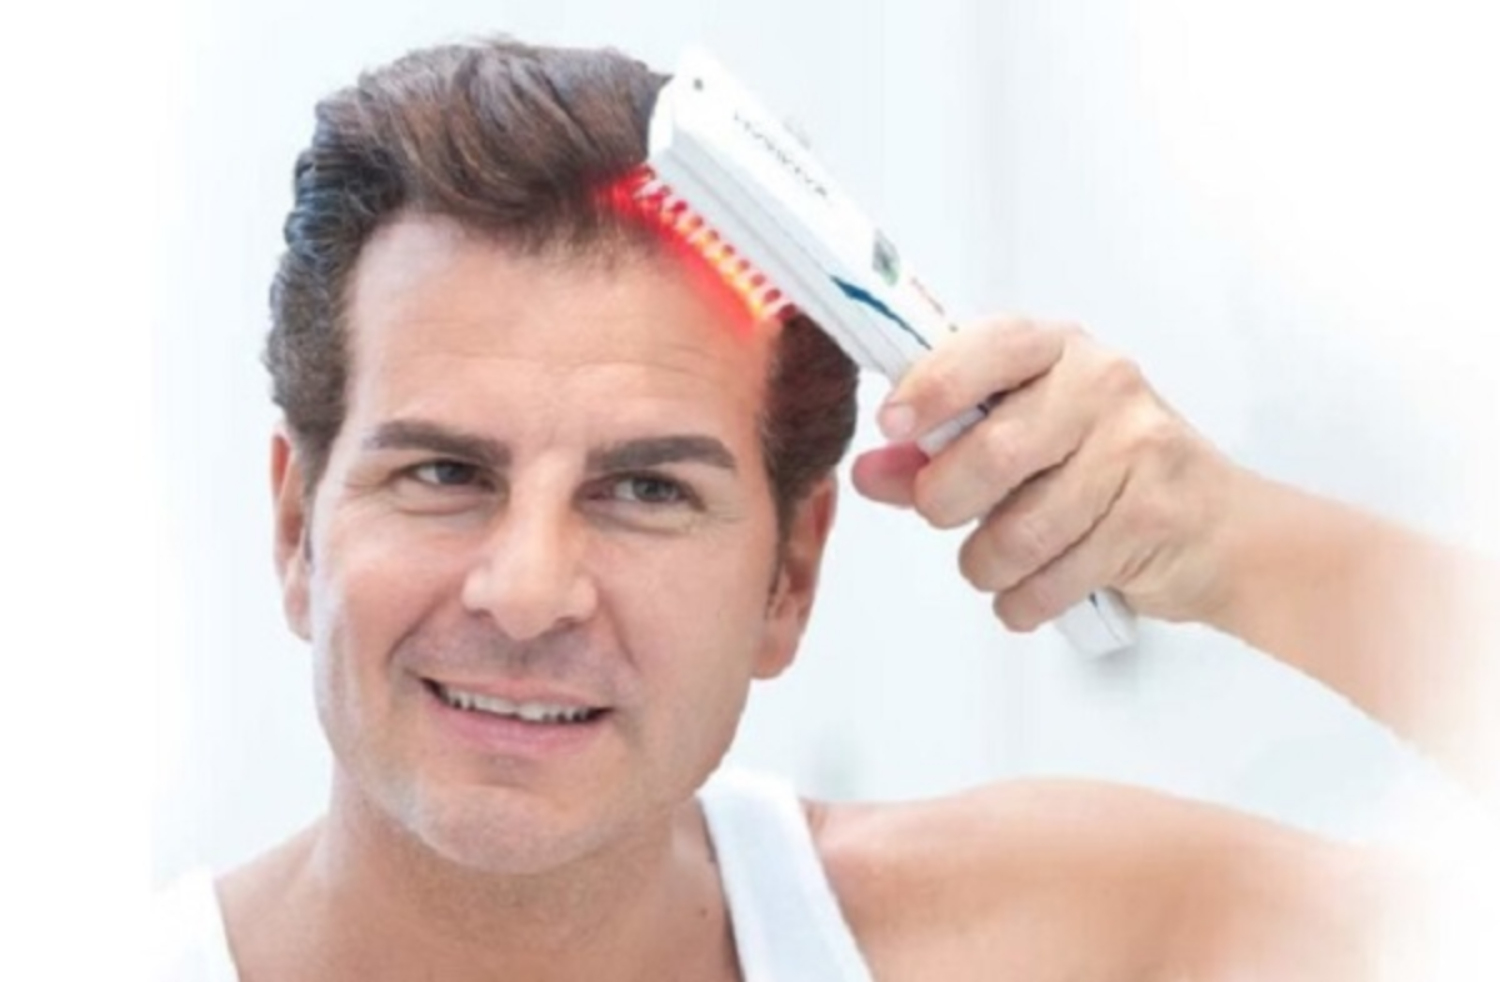 10 Cách mọc tóc nhanh cho nam giải pháp an toàn hiệu quả